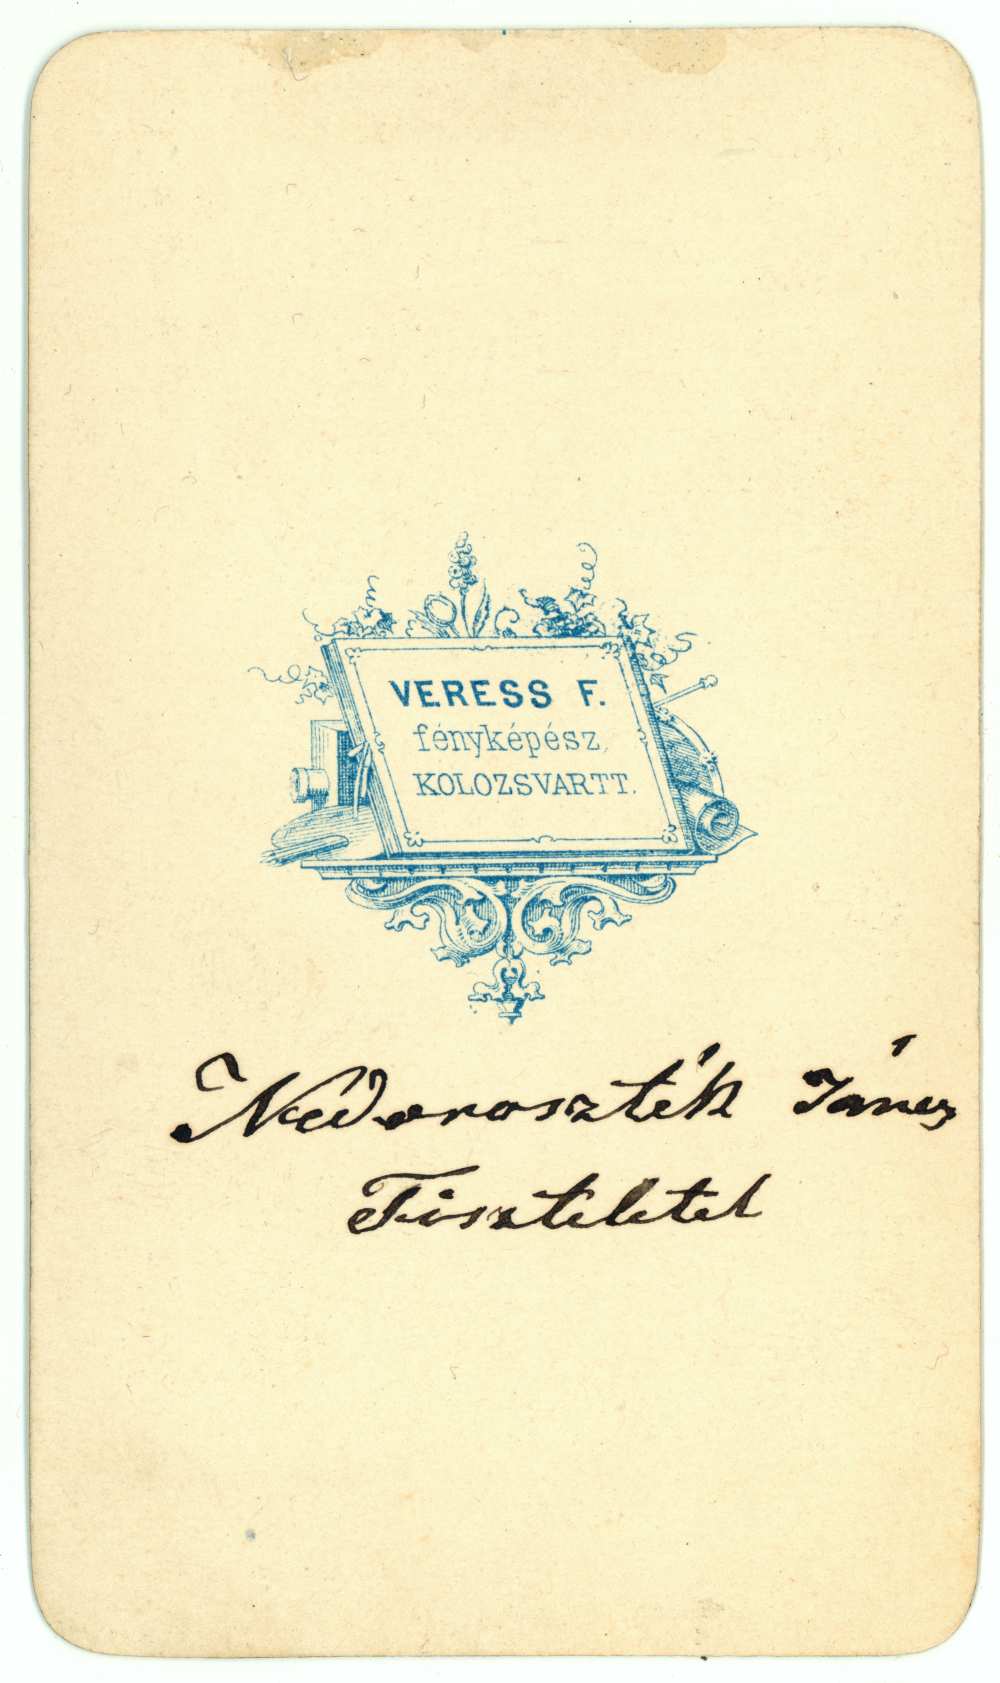 Nedoroszték János fényképe. Verzó. Fotó: Veress Ferenc. (Ezt a fotót küldte el Kossuthnak a leveléhez mellékelve.)